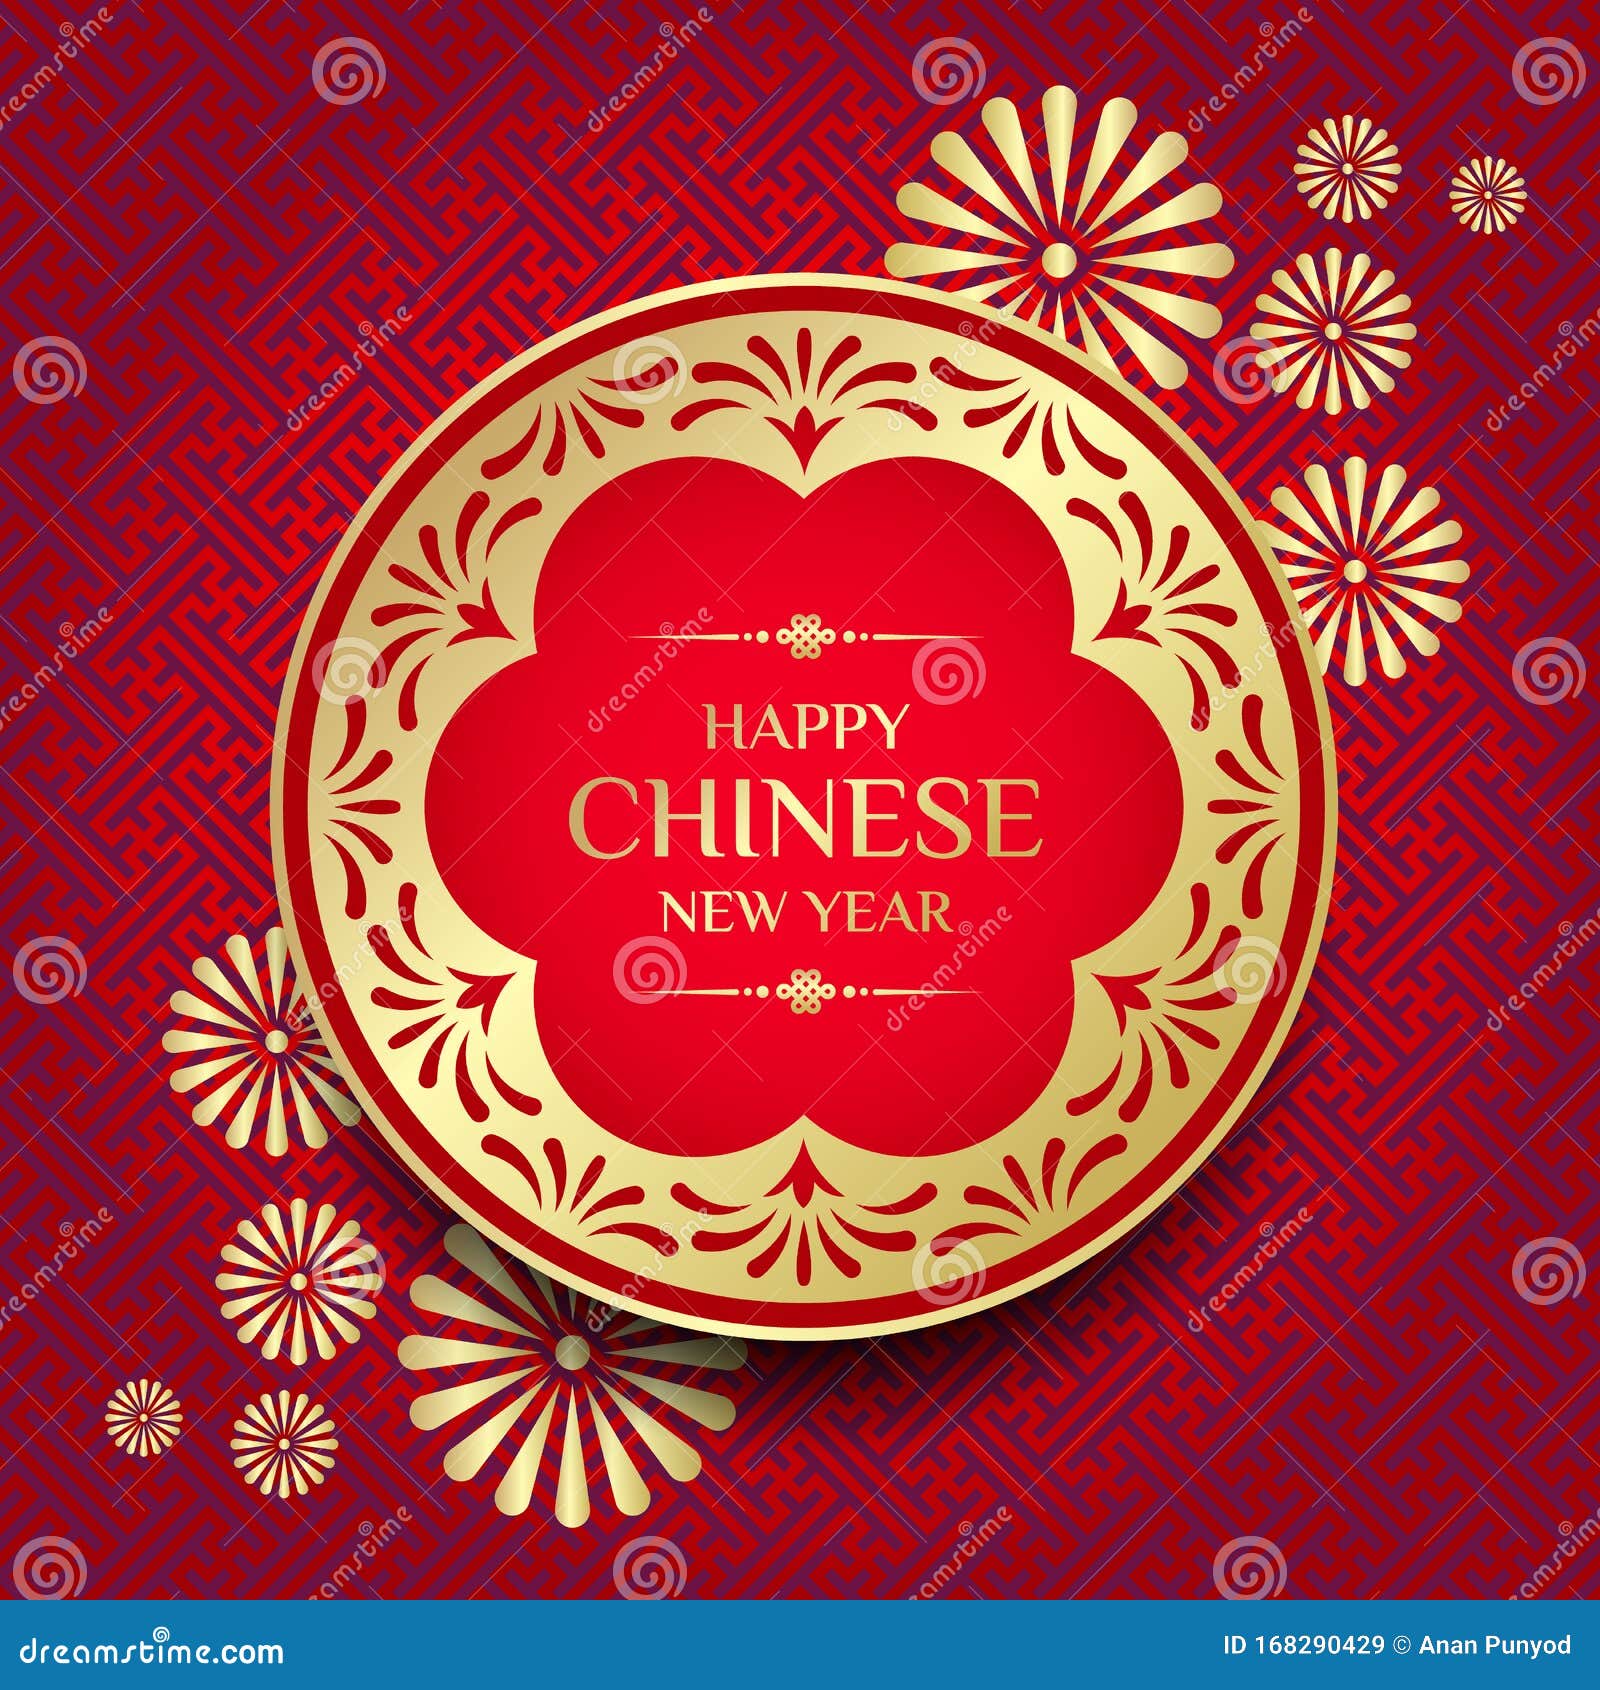 Chúc Mừng Năm Mới Trung Hoa: Năm mới là thời điểm để cầu mong thêm sức khỏe, may mắn và thành công trong các kế hoạch của mình. Hãy cùng chúc mừng Năm Mới Trung Hoa và thư giãn với những hình ảnh hoa phong lan đầy màu sắc.